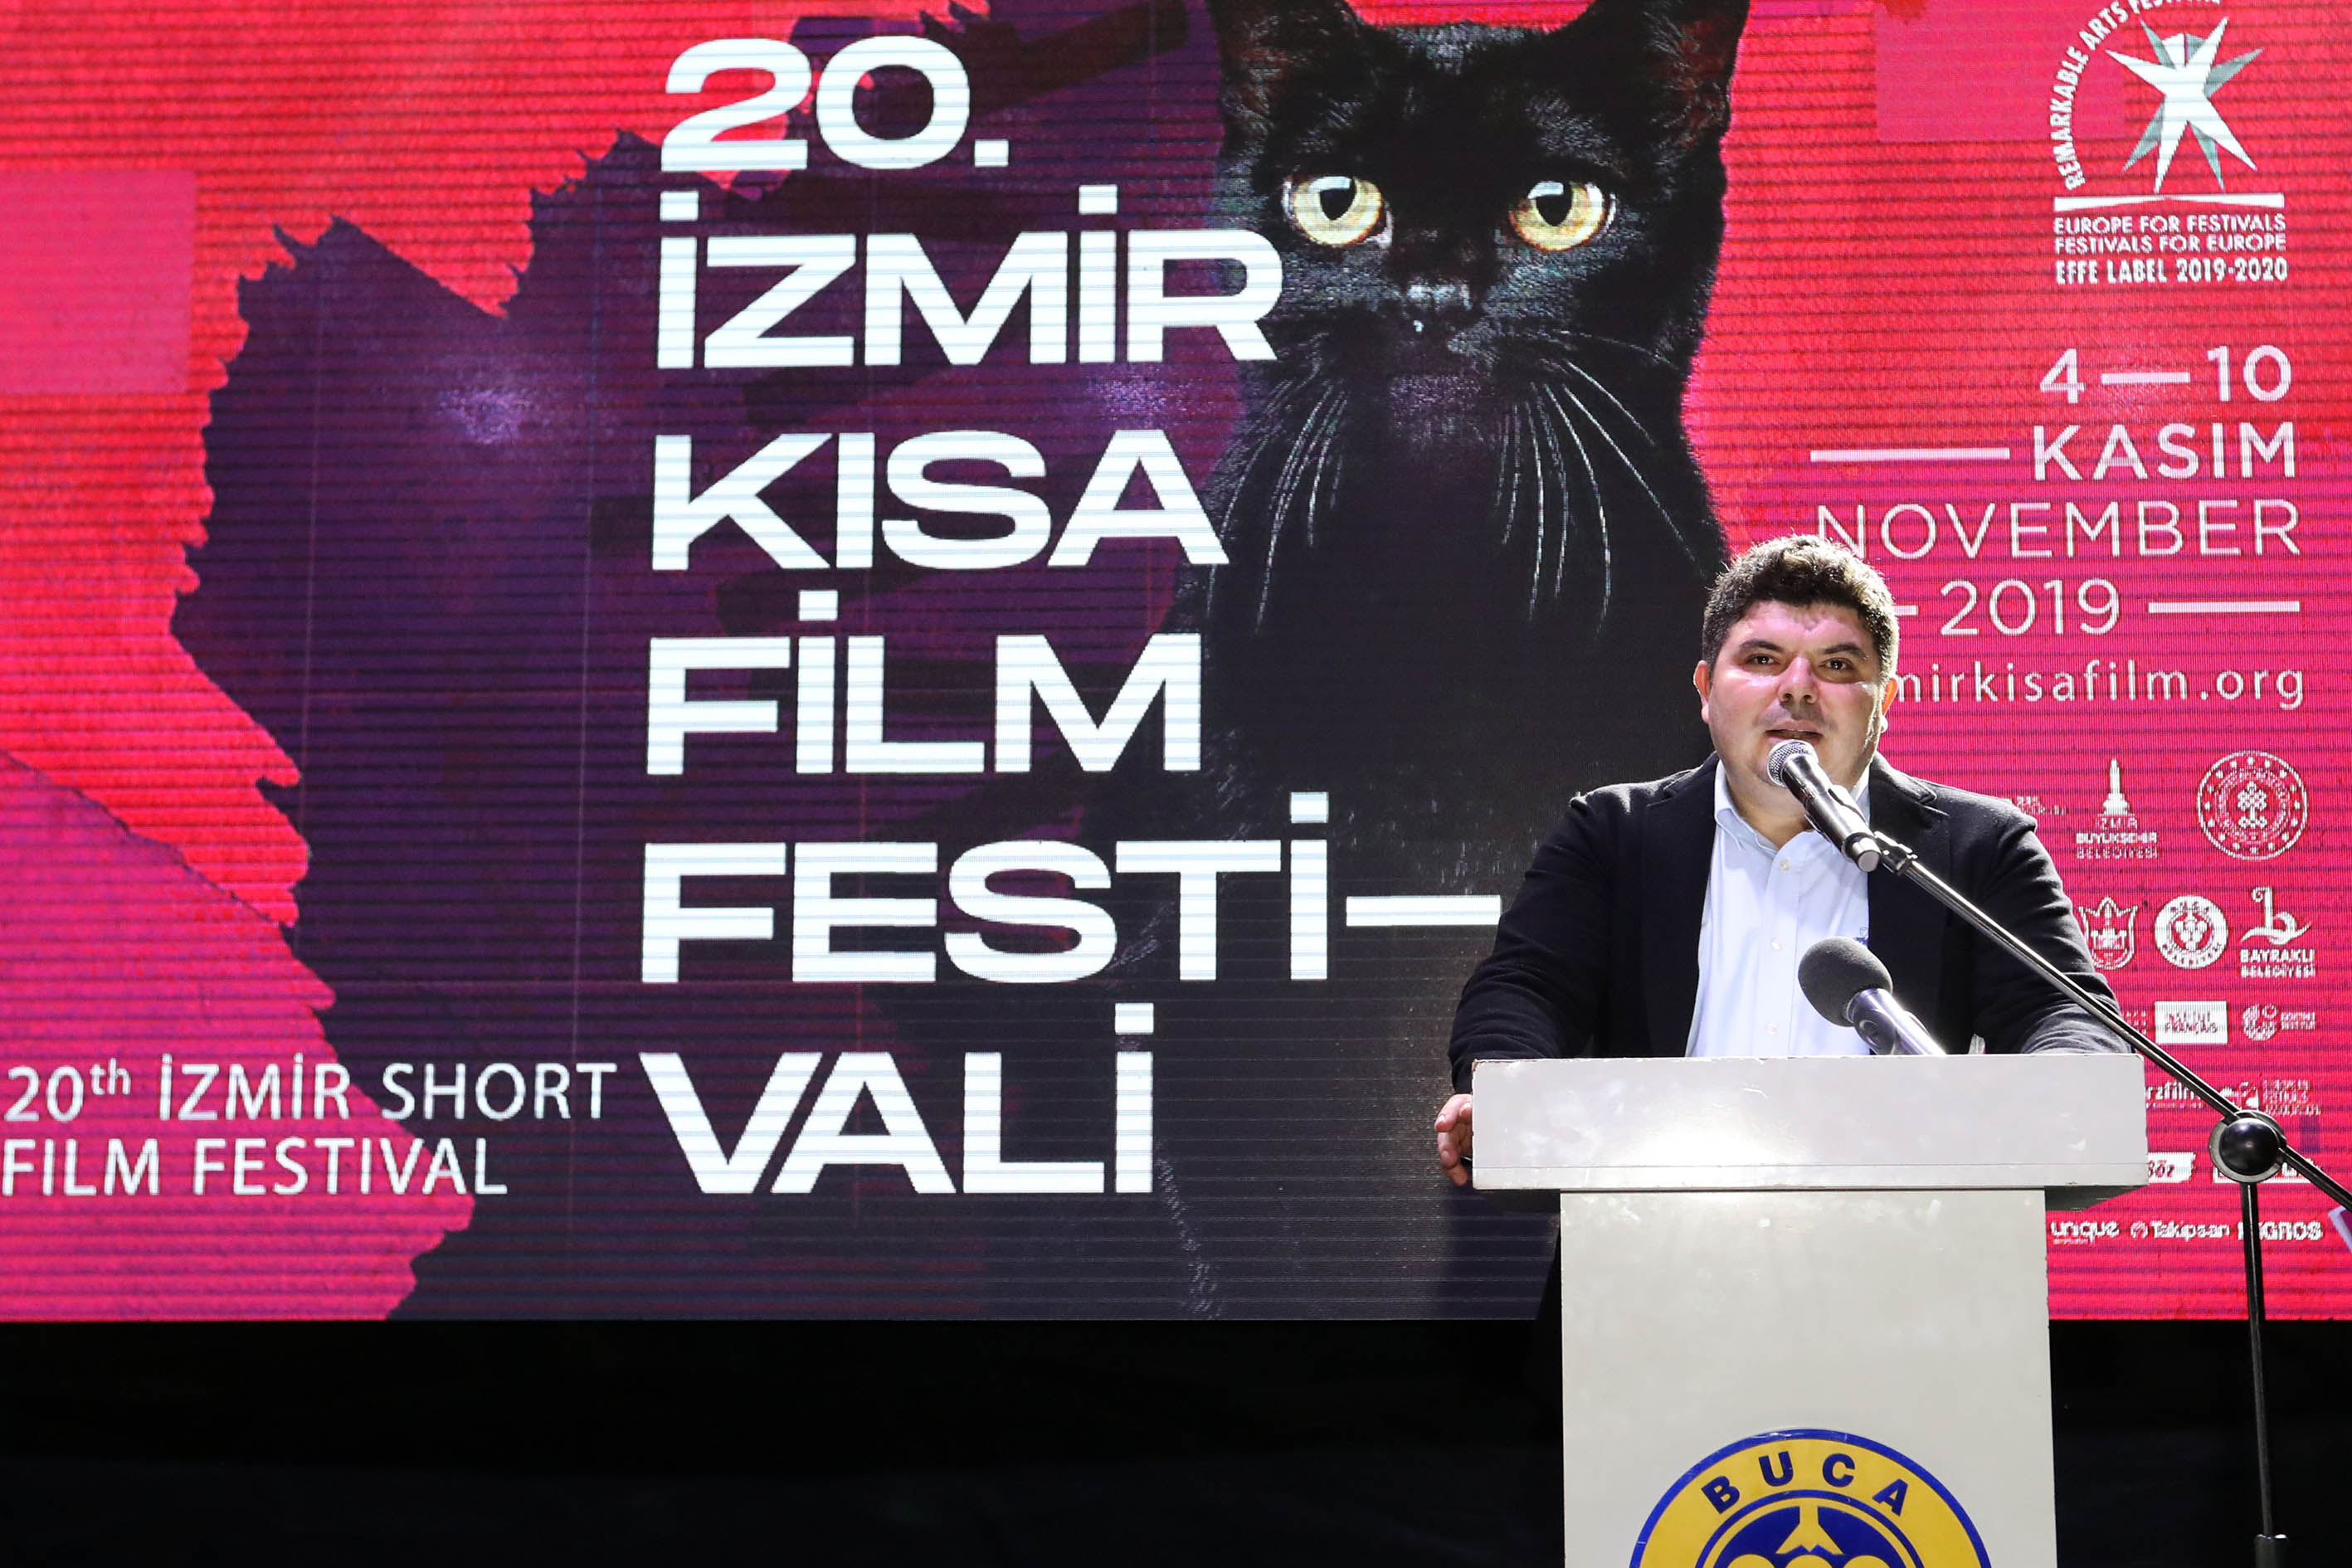 İzmir’in gurur festivalinde 20’inci yıl coşkusu